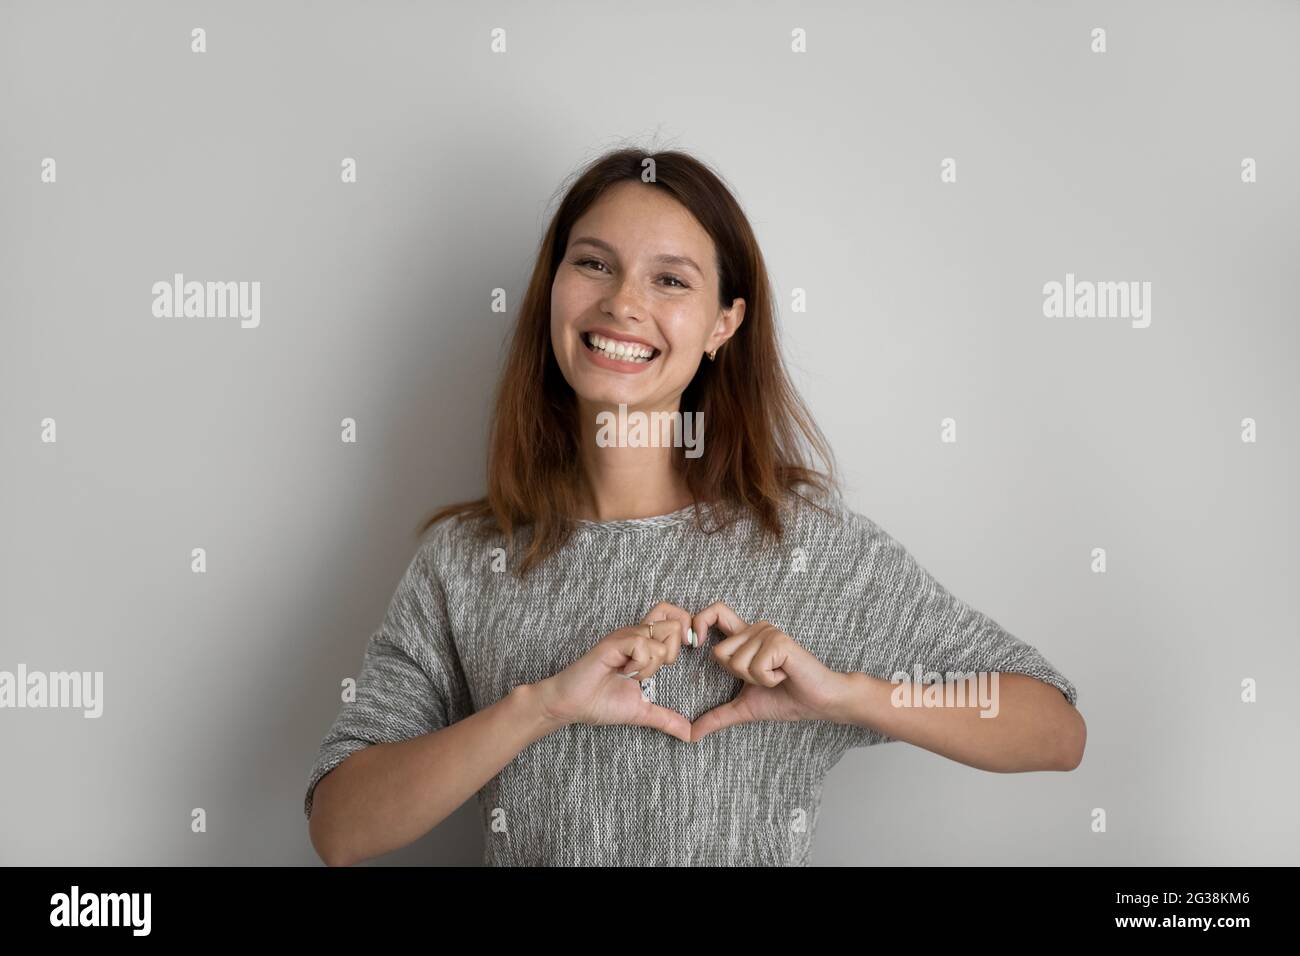 Ritratto della testa di una donna sorridente e attraente che mostra un gesto del cuore Foto Stock